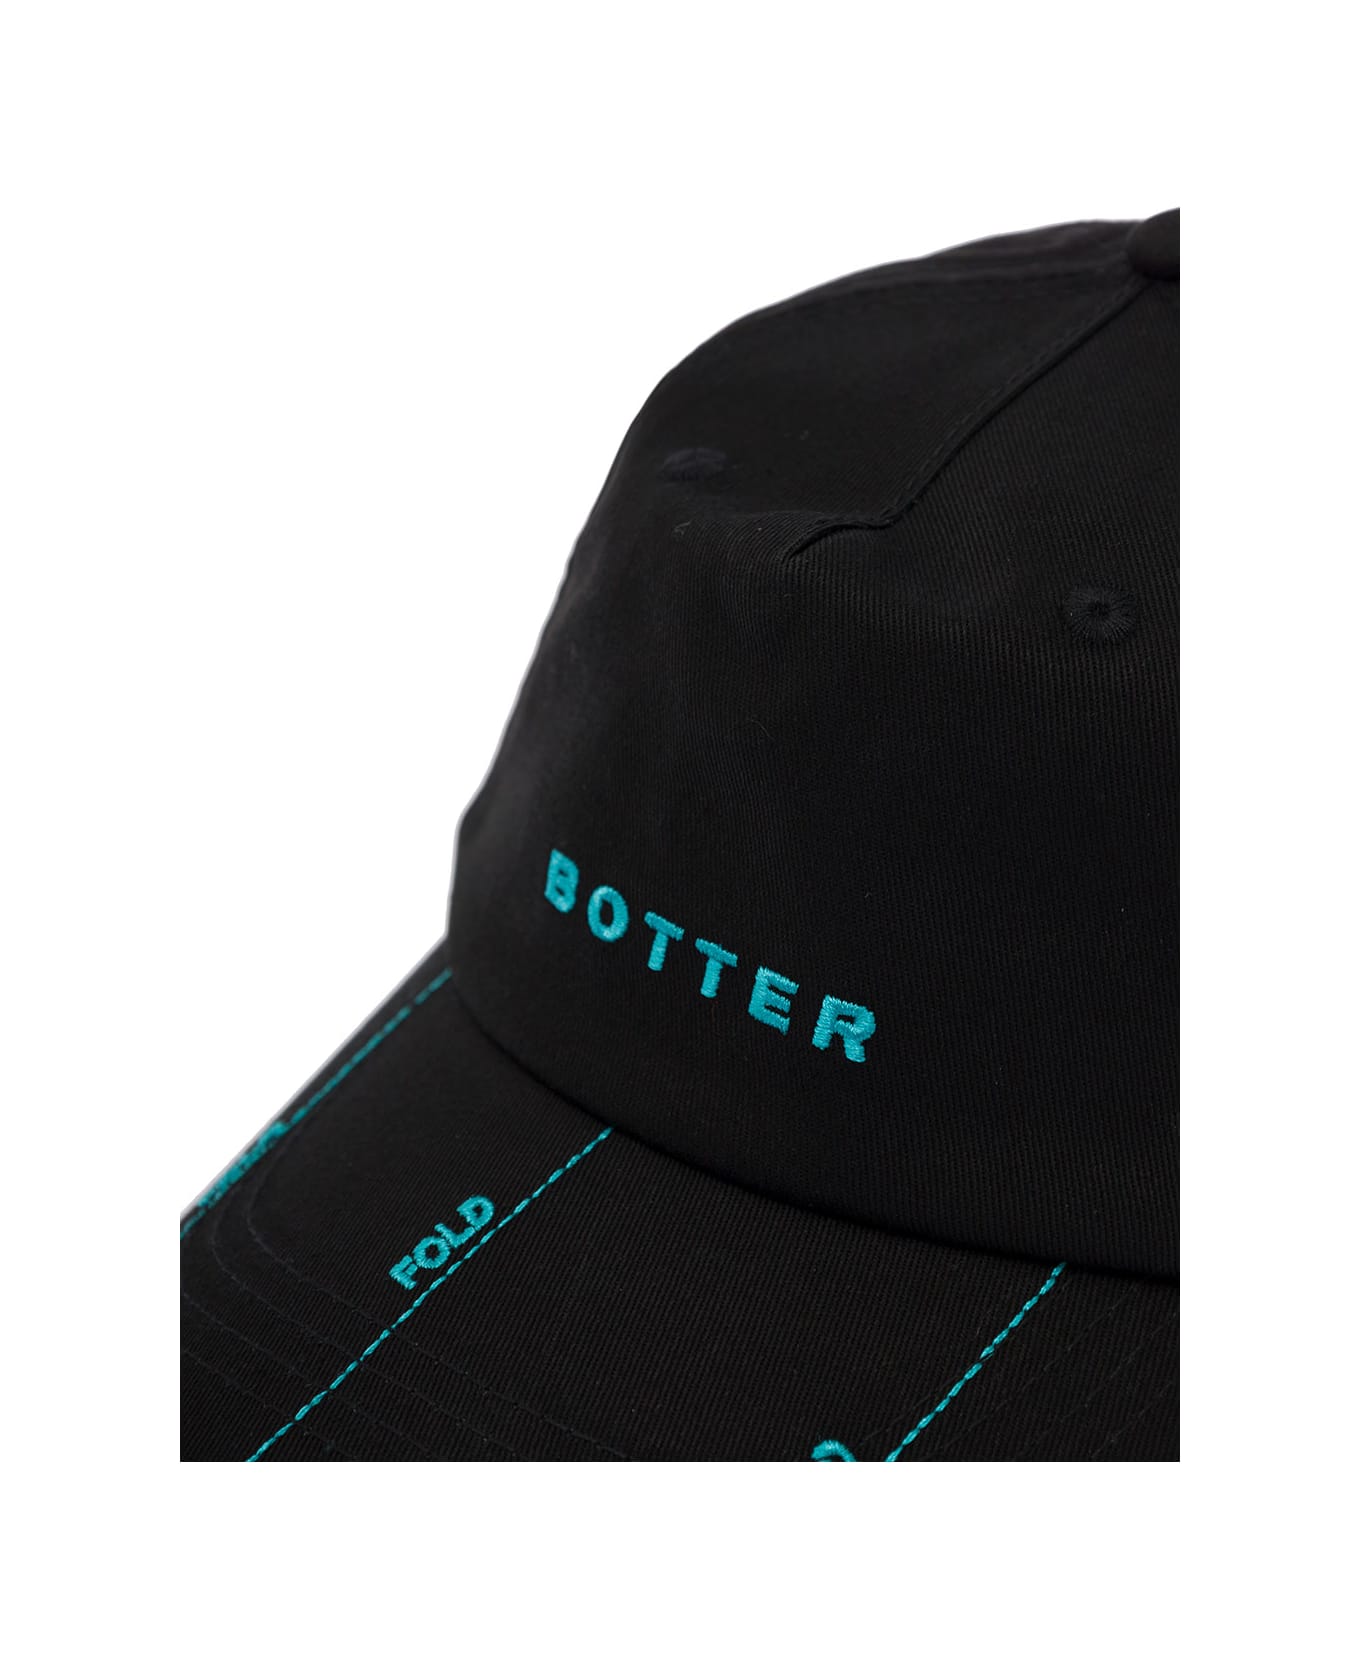 Botter Fold Cap - Black